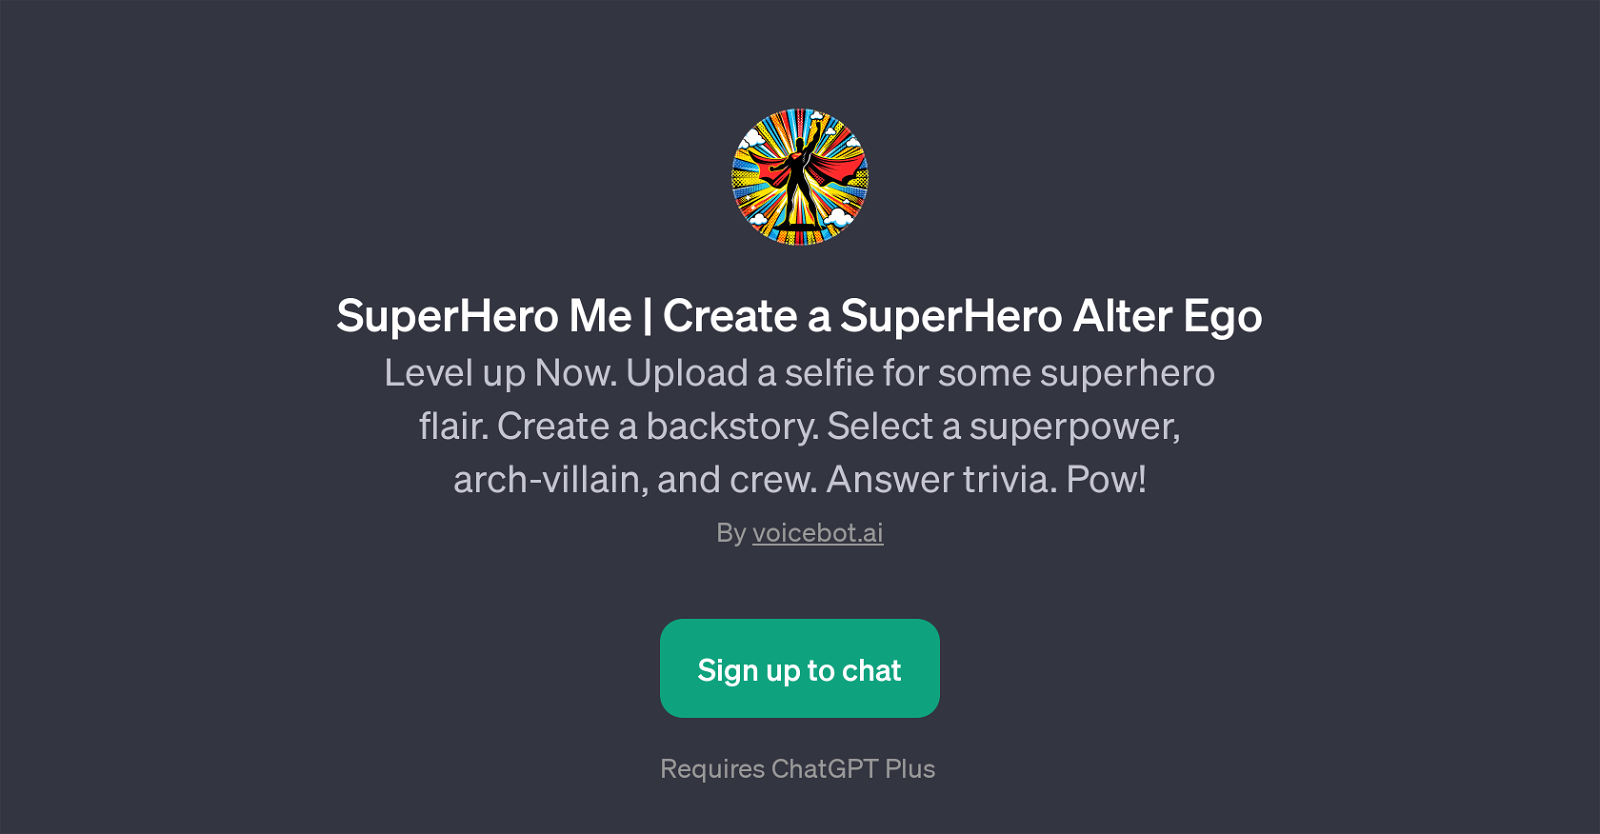 SuperHero Me | Create a SuperHero Alter Ego website